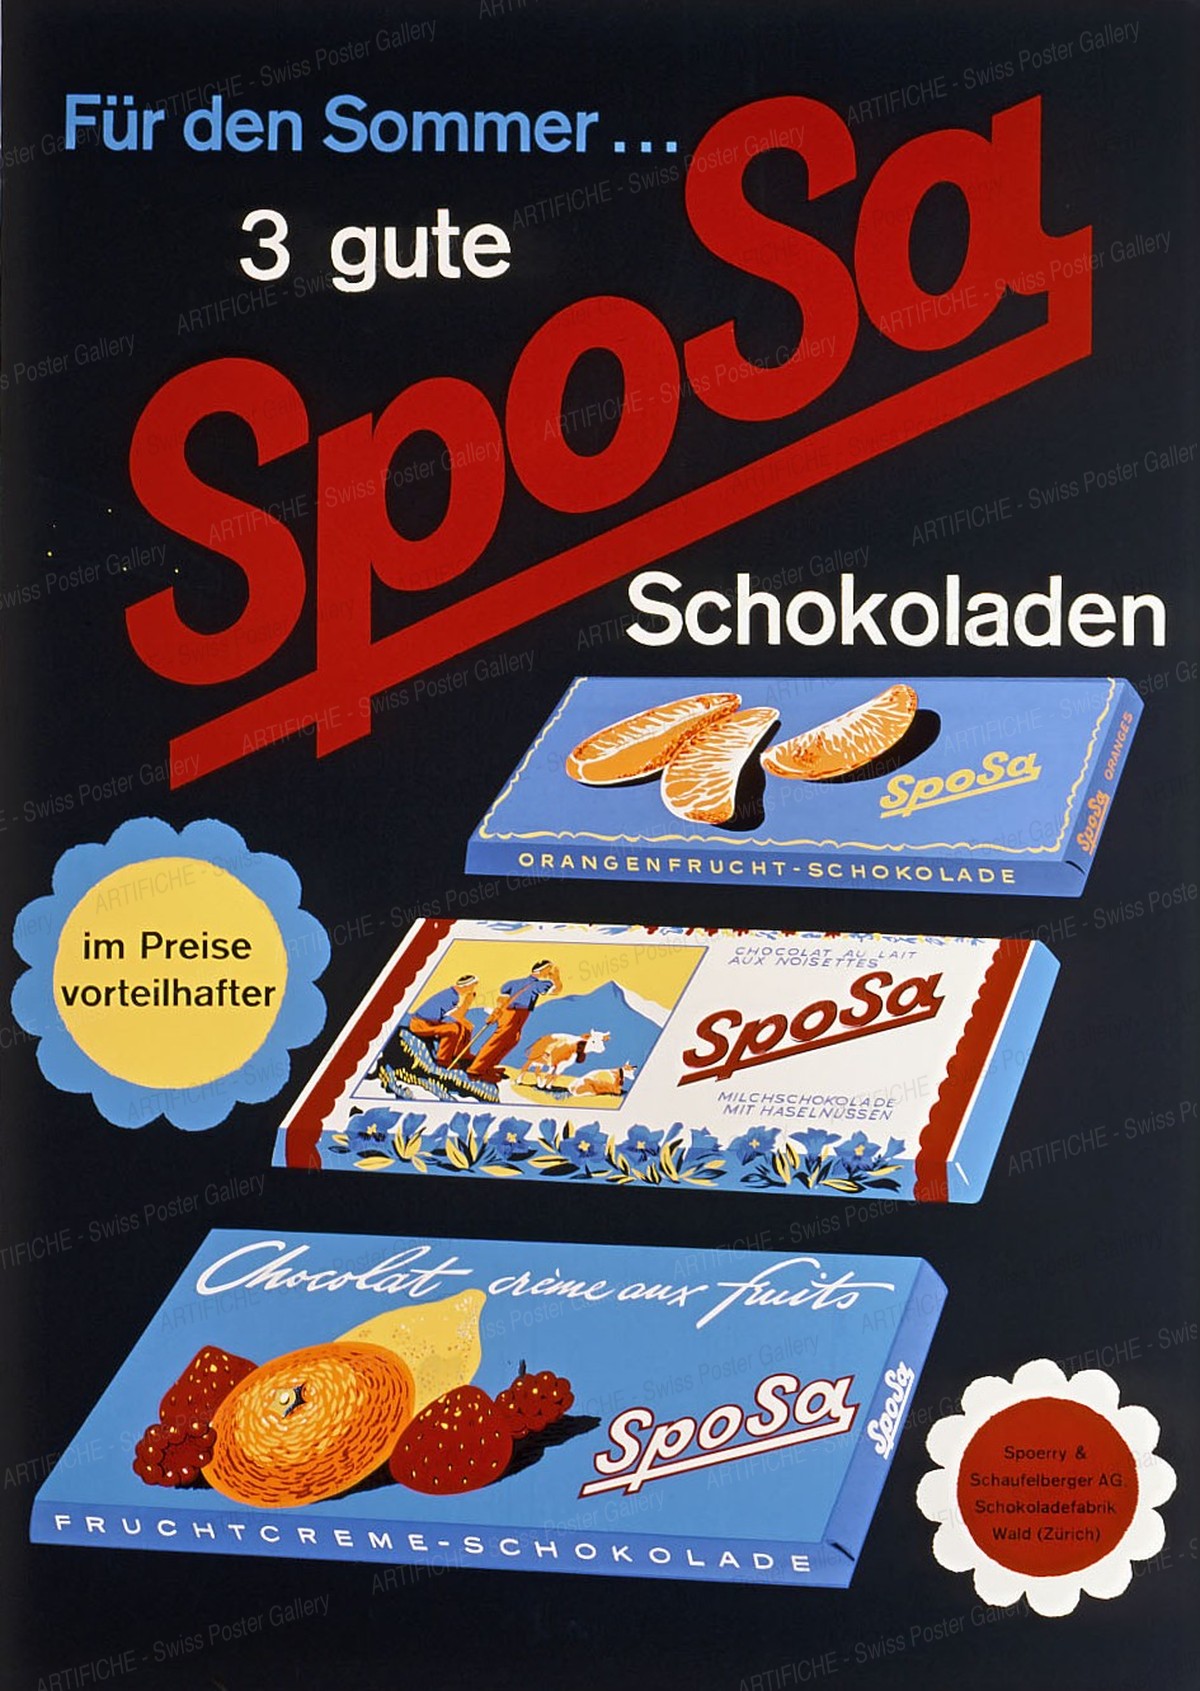 SpoSa – Summer Chocolate, Artist unknown